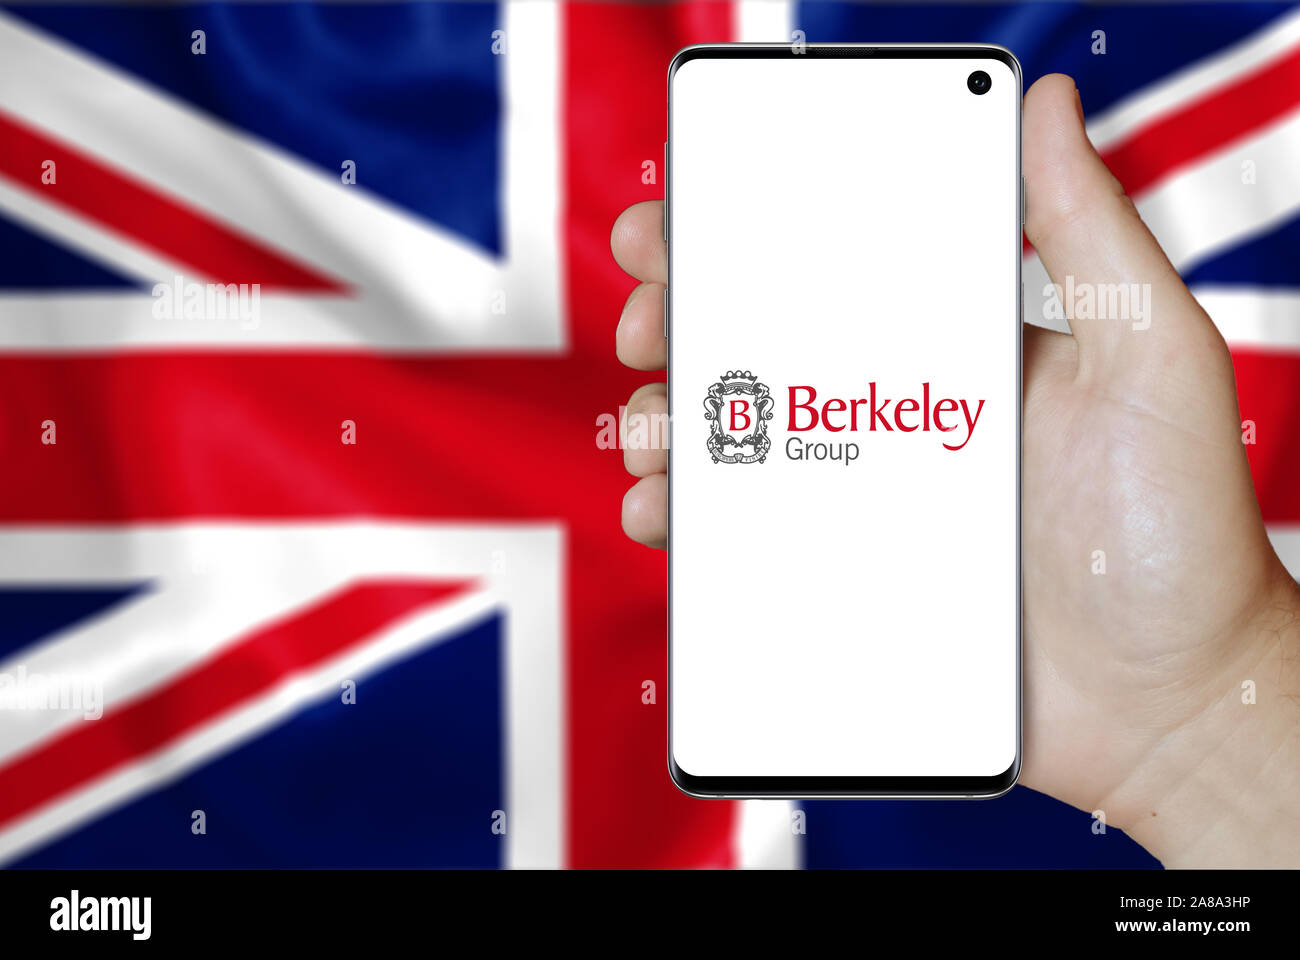 Logo der öffentlichen Unternehmen Berkeley Group Holdings auf dem Smartphone angezeigt. Flagge der Britischen Hintergrund. Credit: PIXDUCE Stockfoto